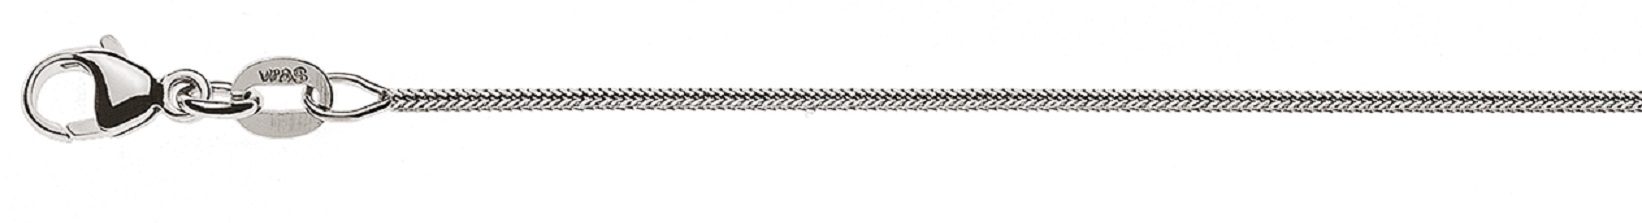 AURONOS Prestige Halskette Weissgold 18K Fuchsschwanz diamantiert 45cm 0.9mm